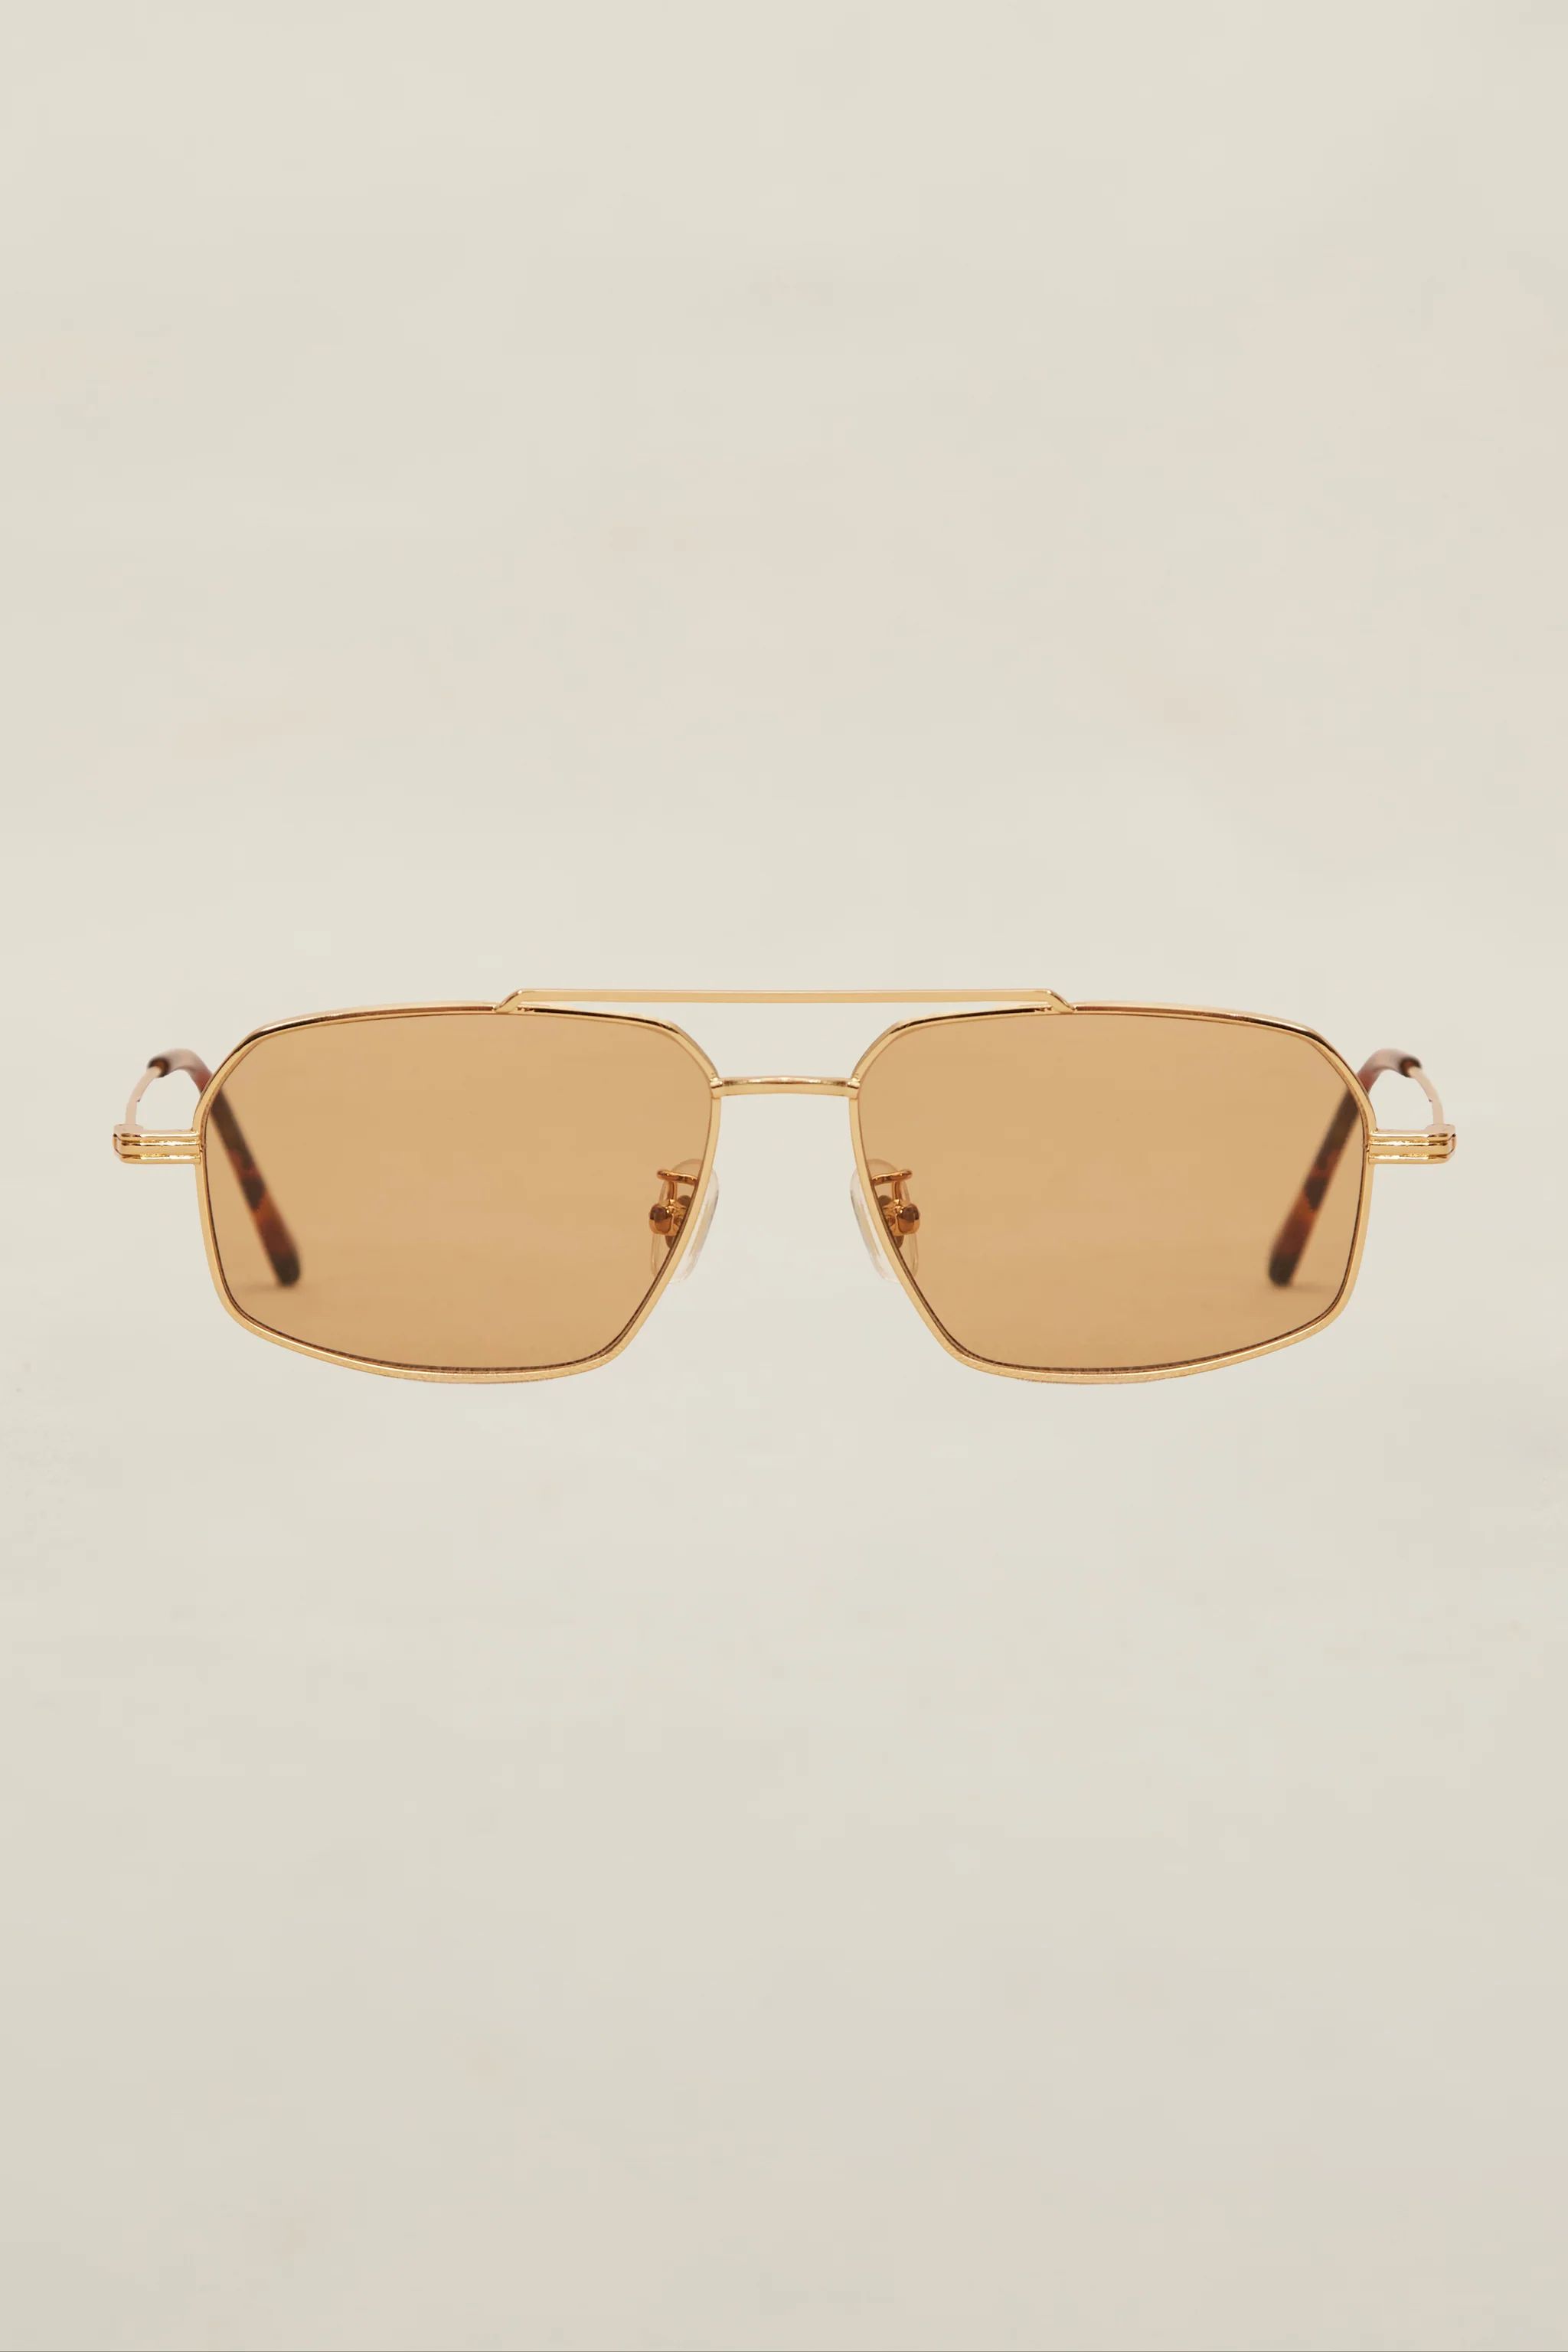 Lagos Sunglasses | Devon Windsor